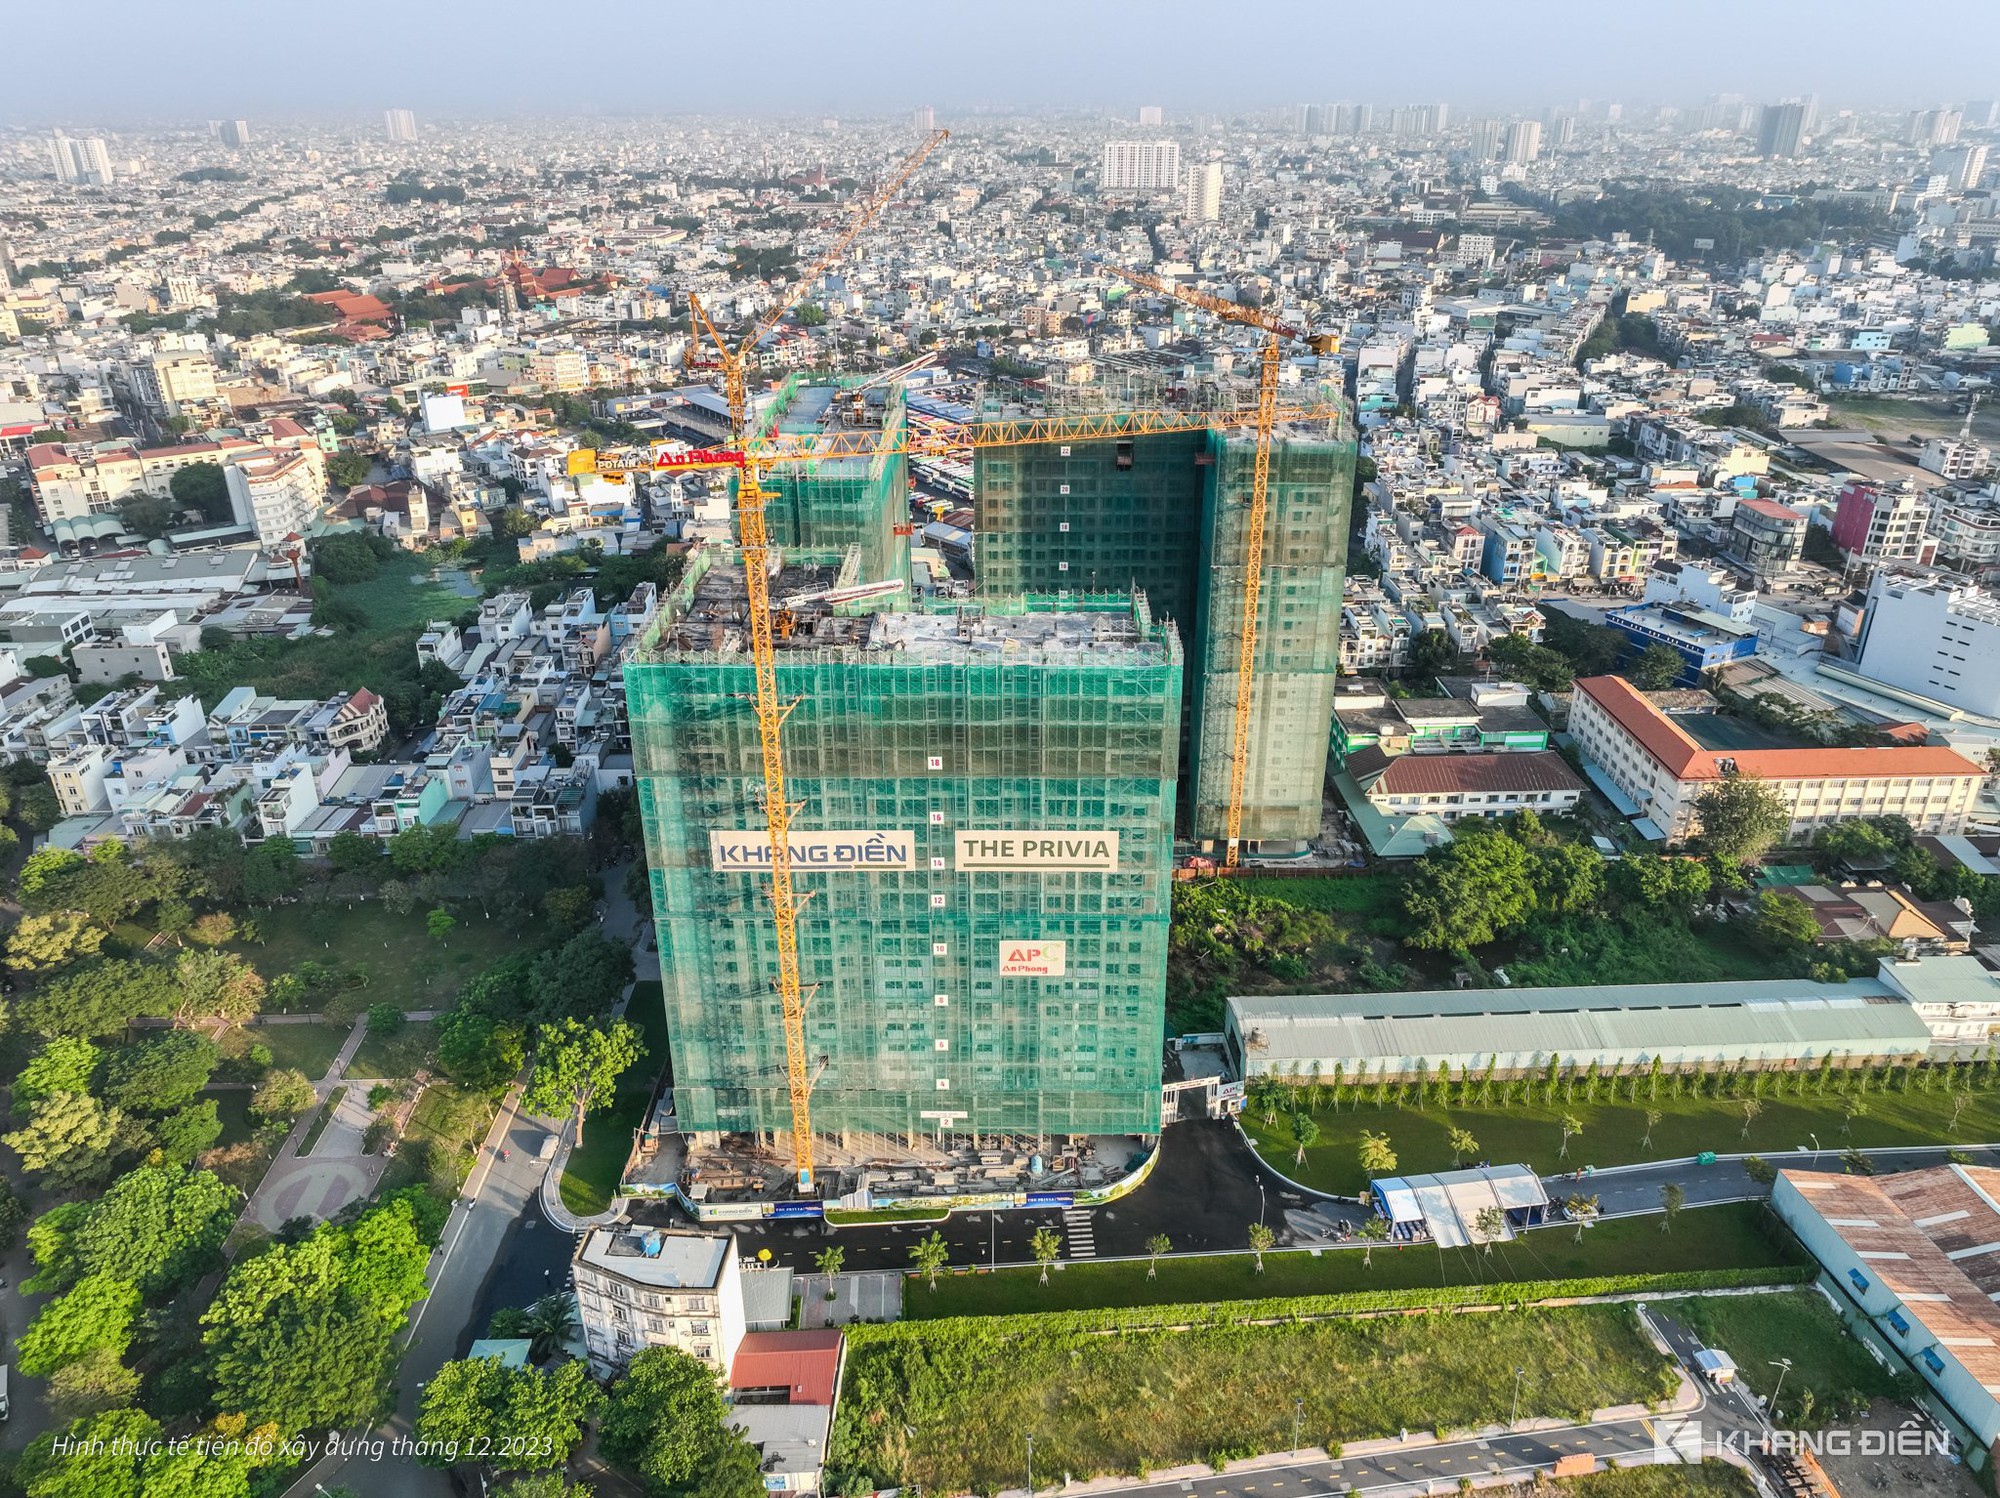 The Privia - Khang Điền: Bán gần 1000 căn hộ chỉ sau hơn 1 tháng - Ảnh 2.